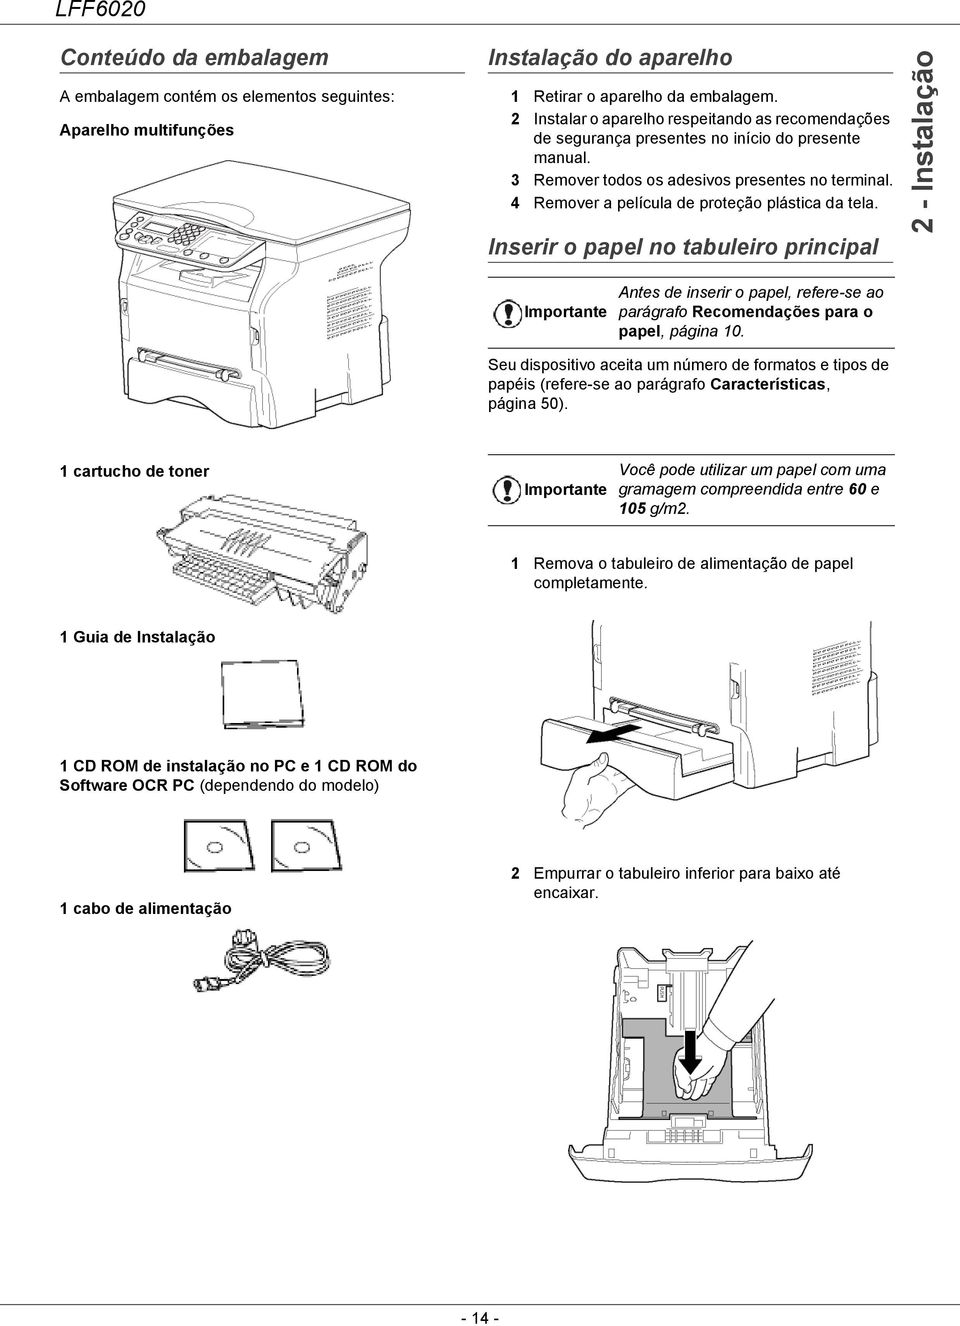 4 Remover a película de proteção plástica da tela. Inserir o papel no tabuleiro principal 2 - Instalação Antes de inserir o papel, refere-se ao parágrafo Recomendações para o papel, página 10.